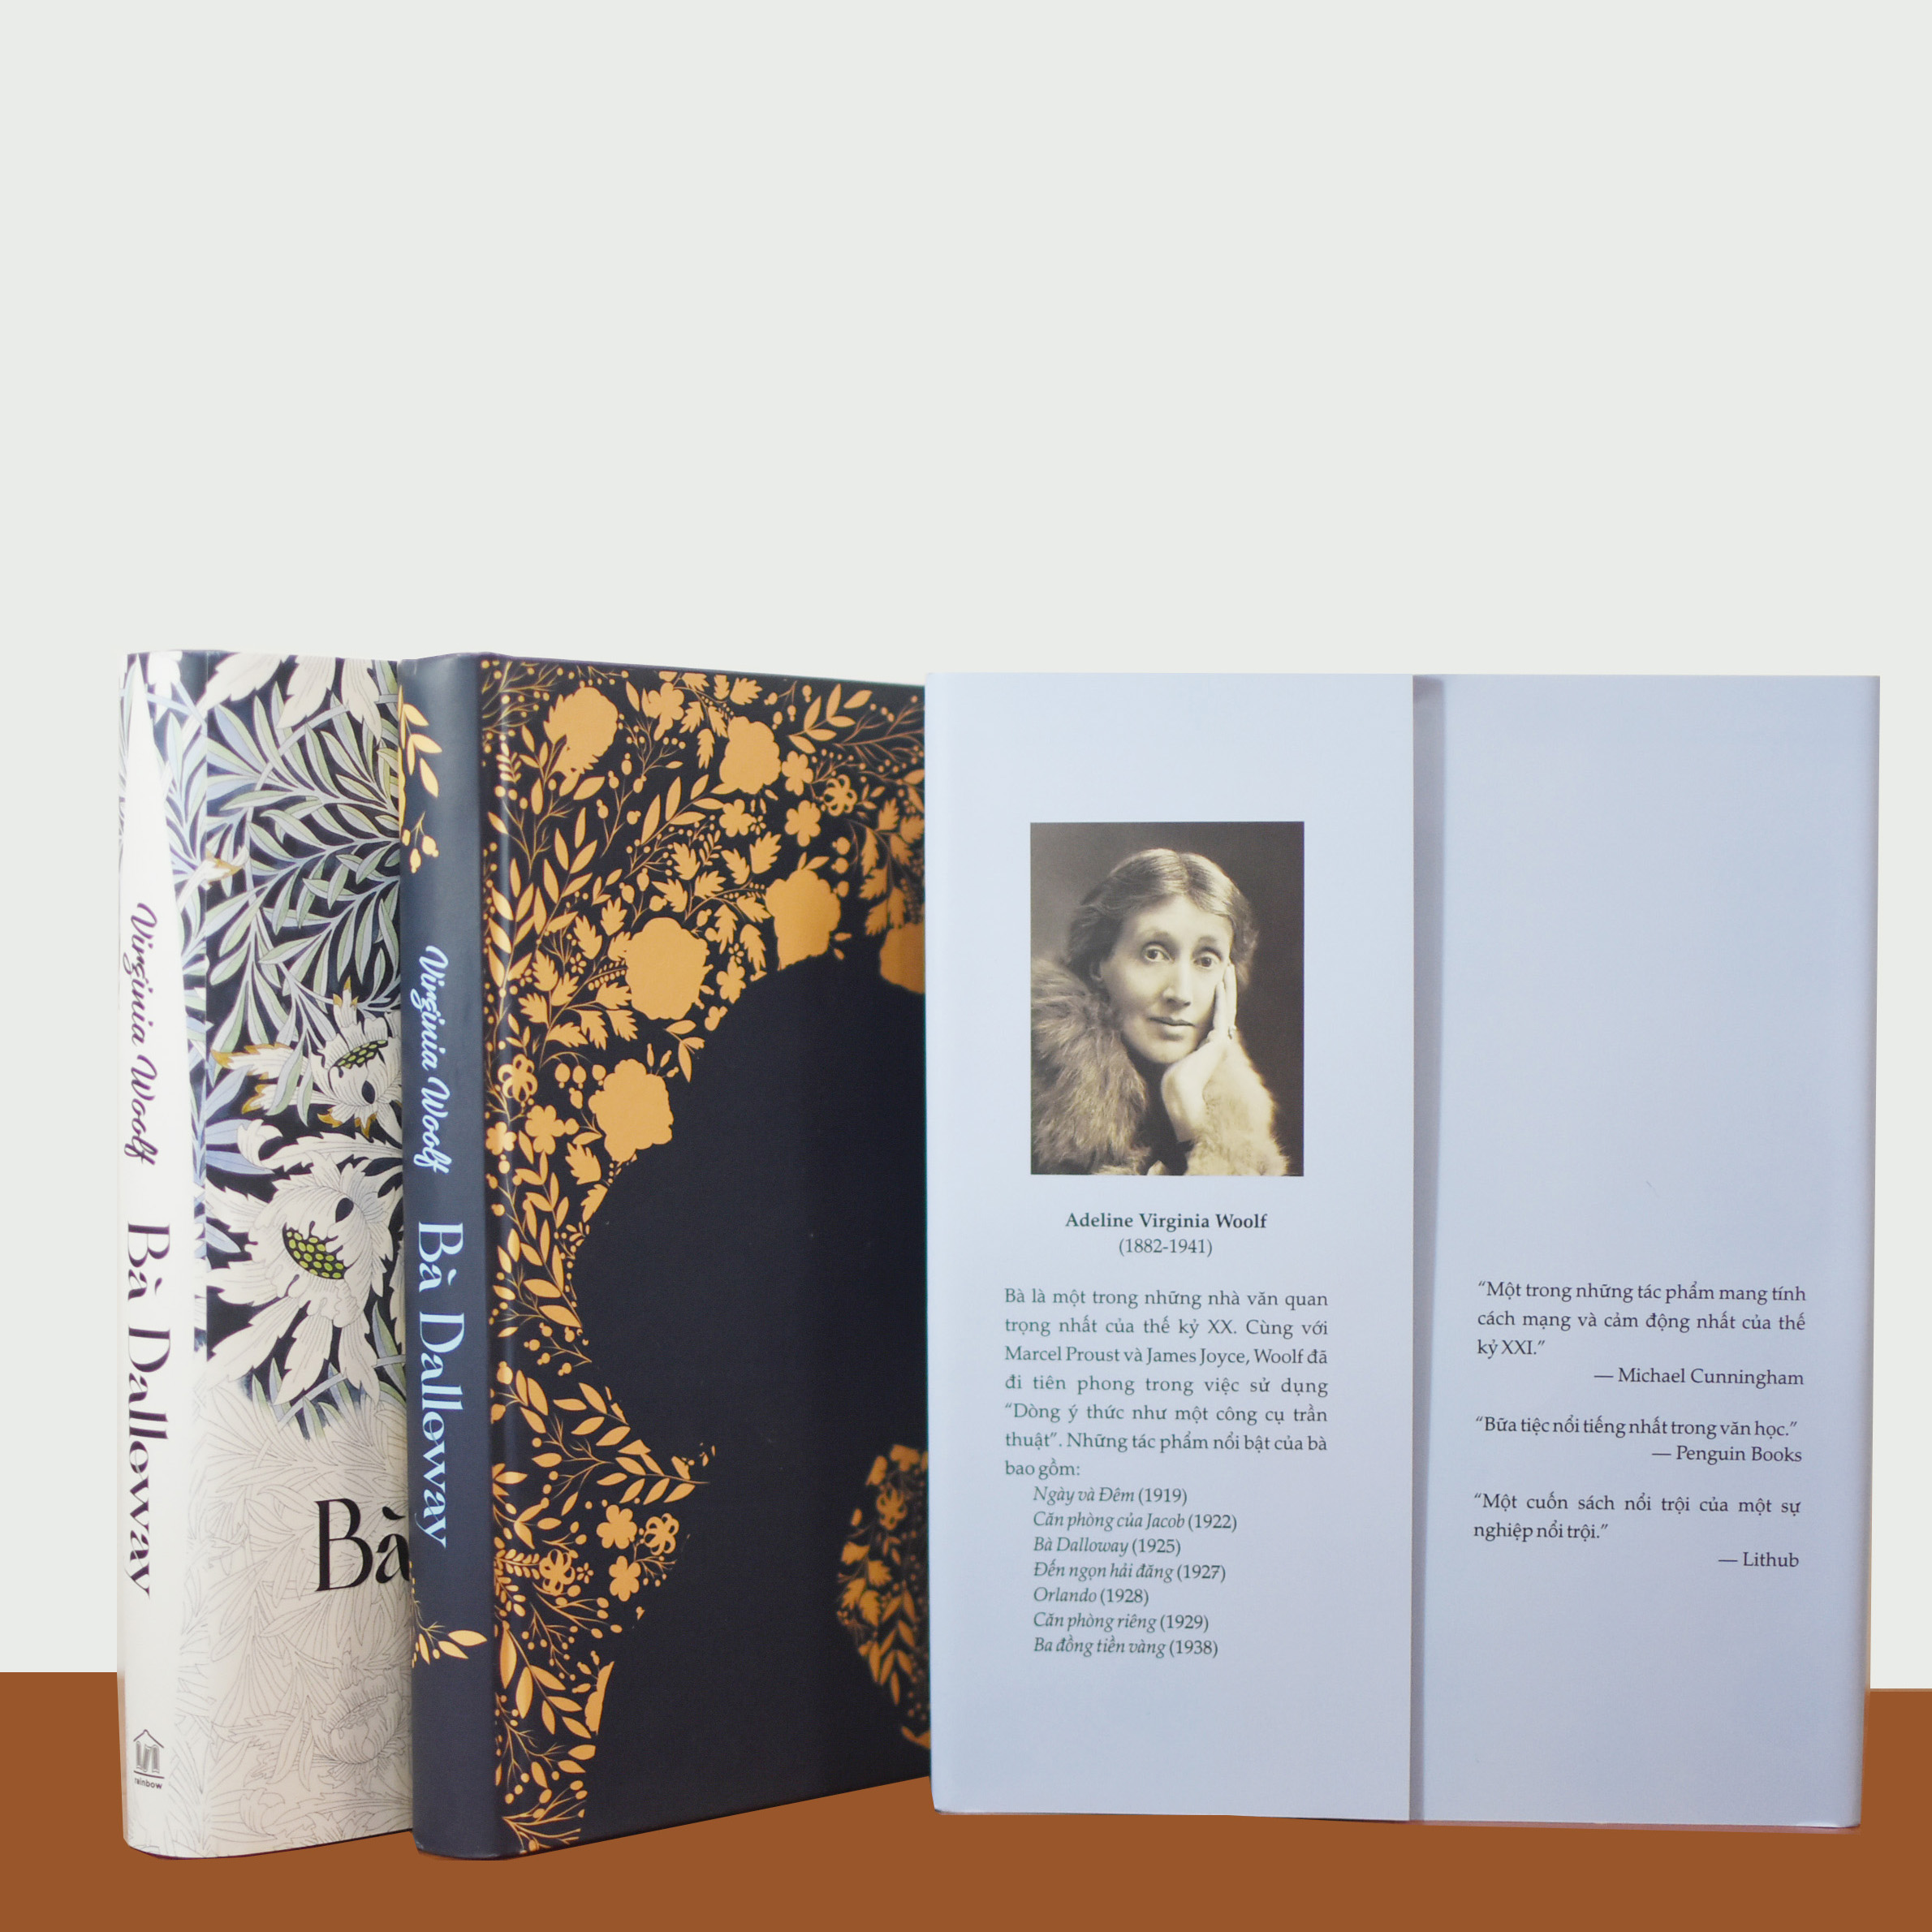 Sách - (Combo 2 cuốn bìa cứng, bản giới hạn đánh số) Bà Dalloway (Virginia Woolf) và Bên này địa đàng (F. Scott Fitzgerald)